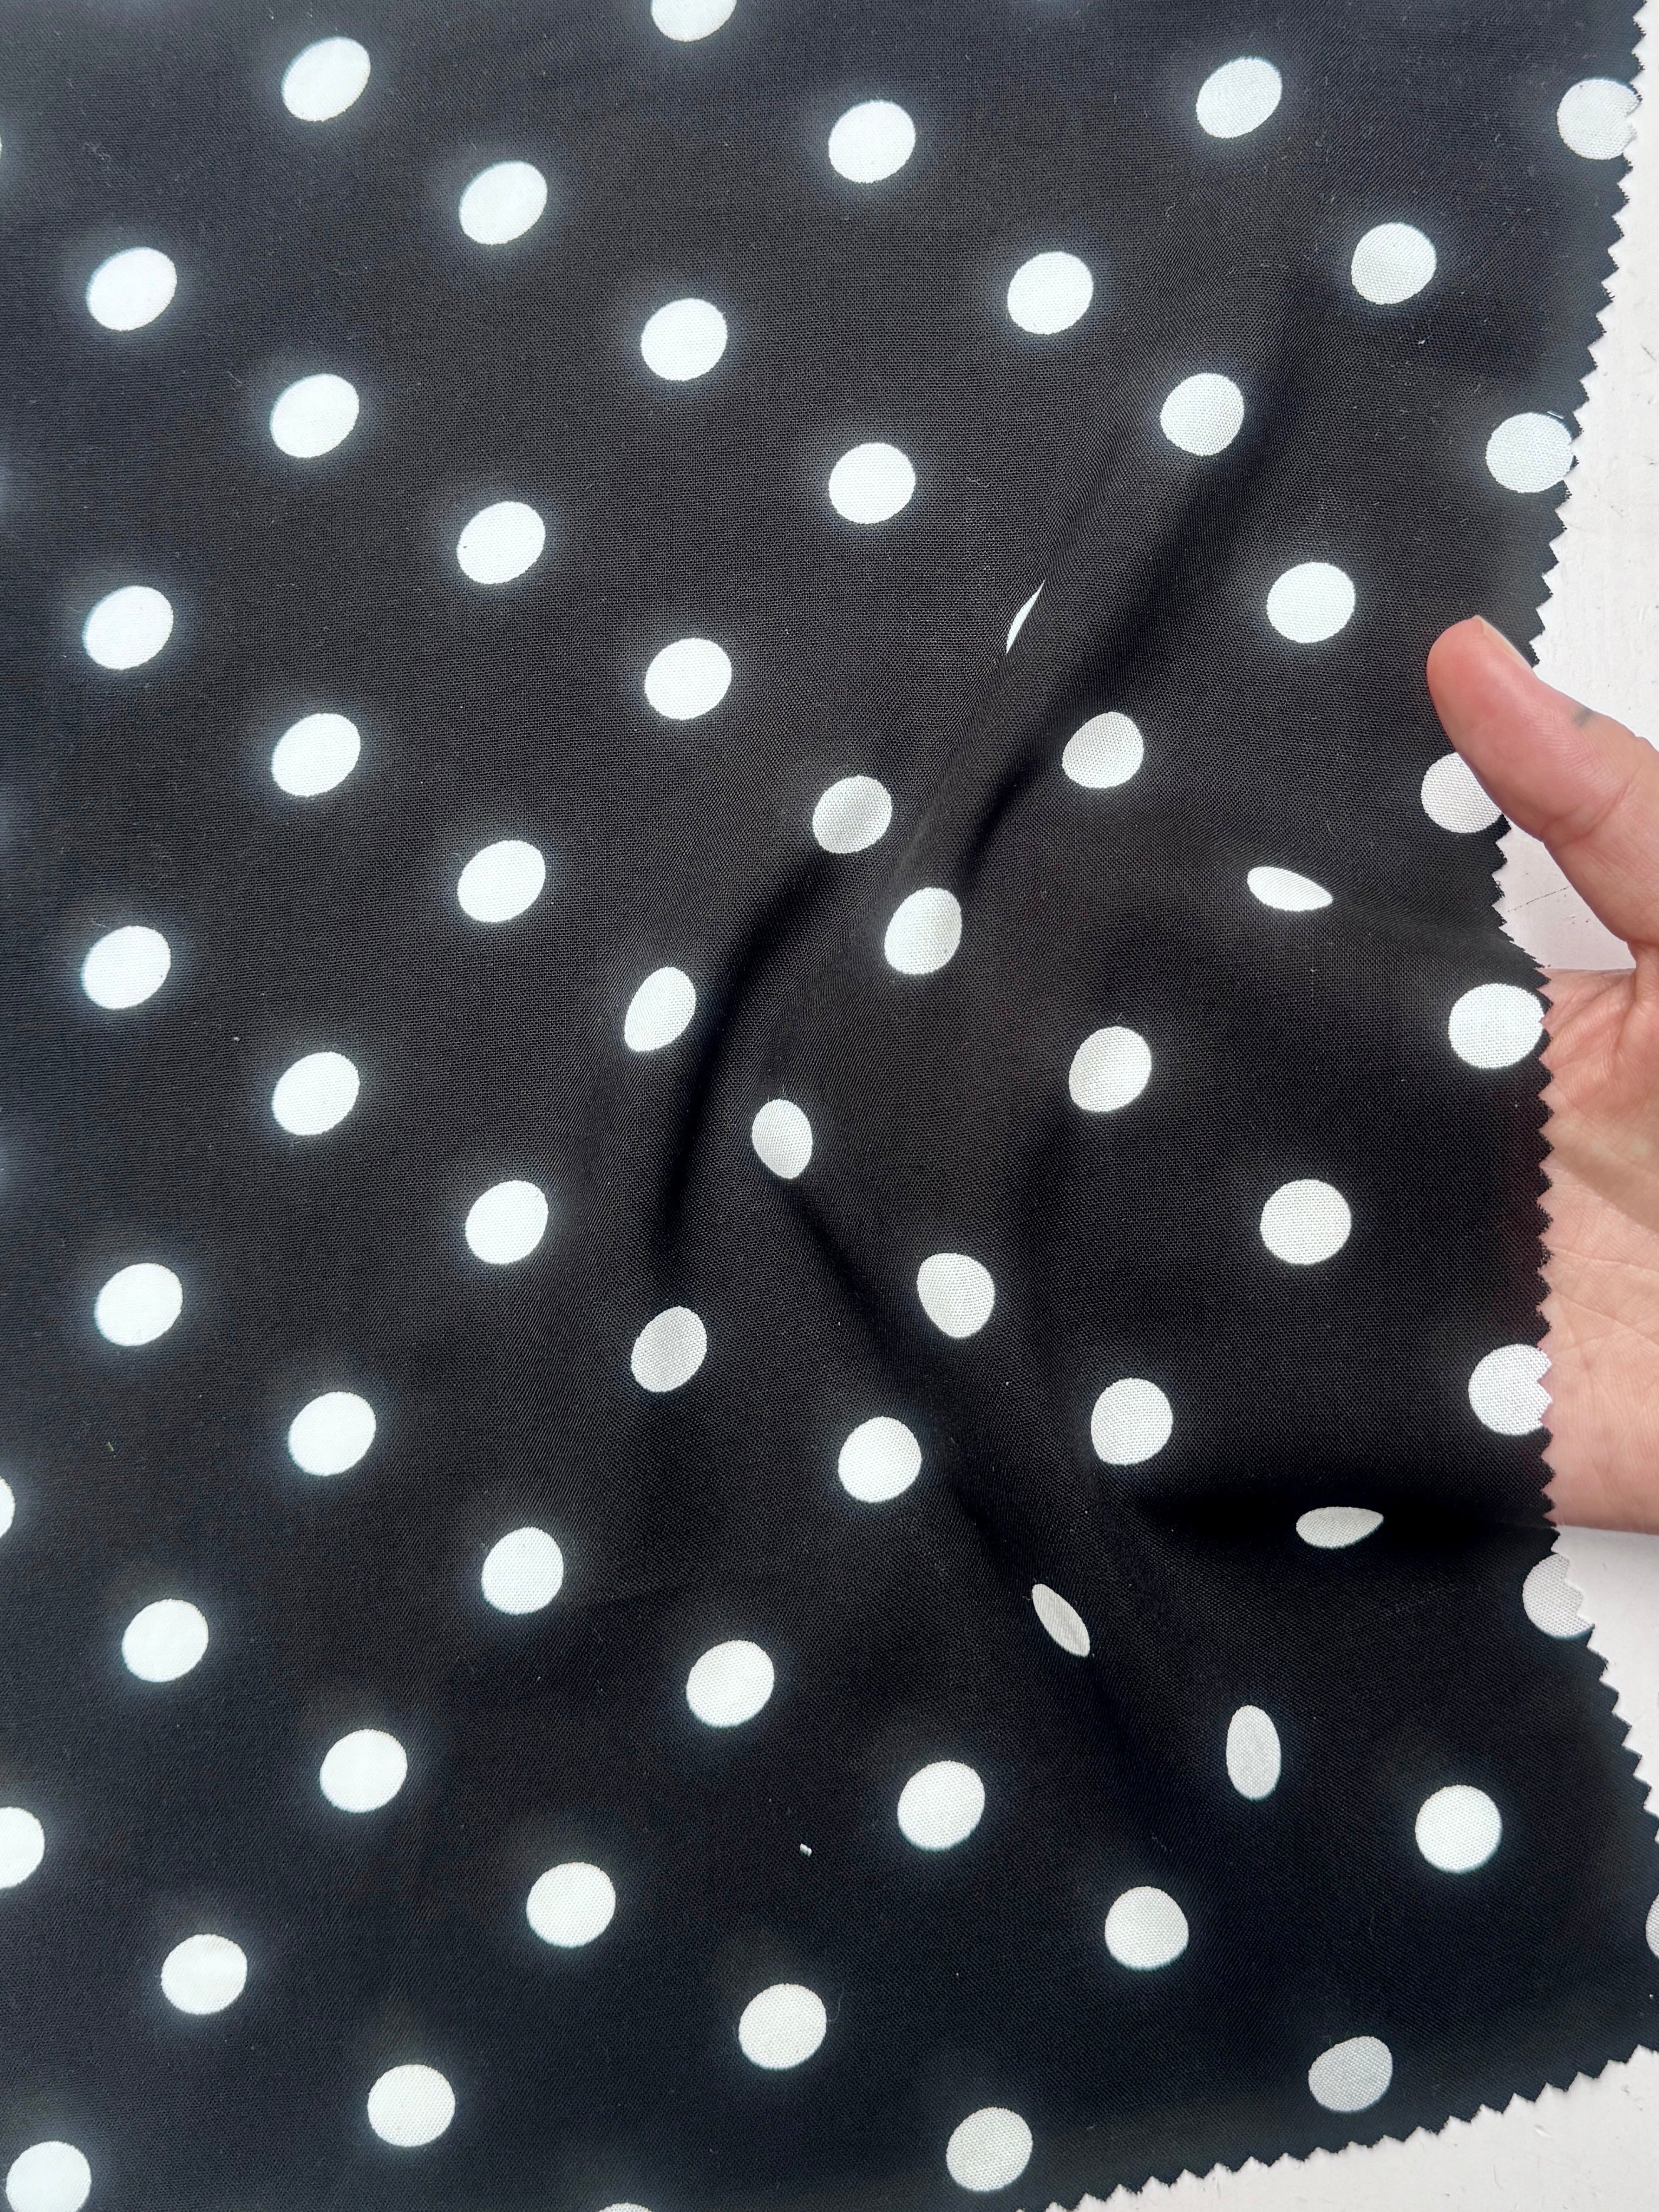 White polka dots on black rayon challis, Black Rayon Challis, Black and white Rayon Challis, eco-friendly fabric, pure Rayon Challis fabric, Rayon Challis, Rayon Challis fabric, kiki textiles, sewing